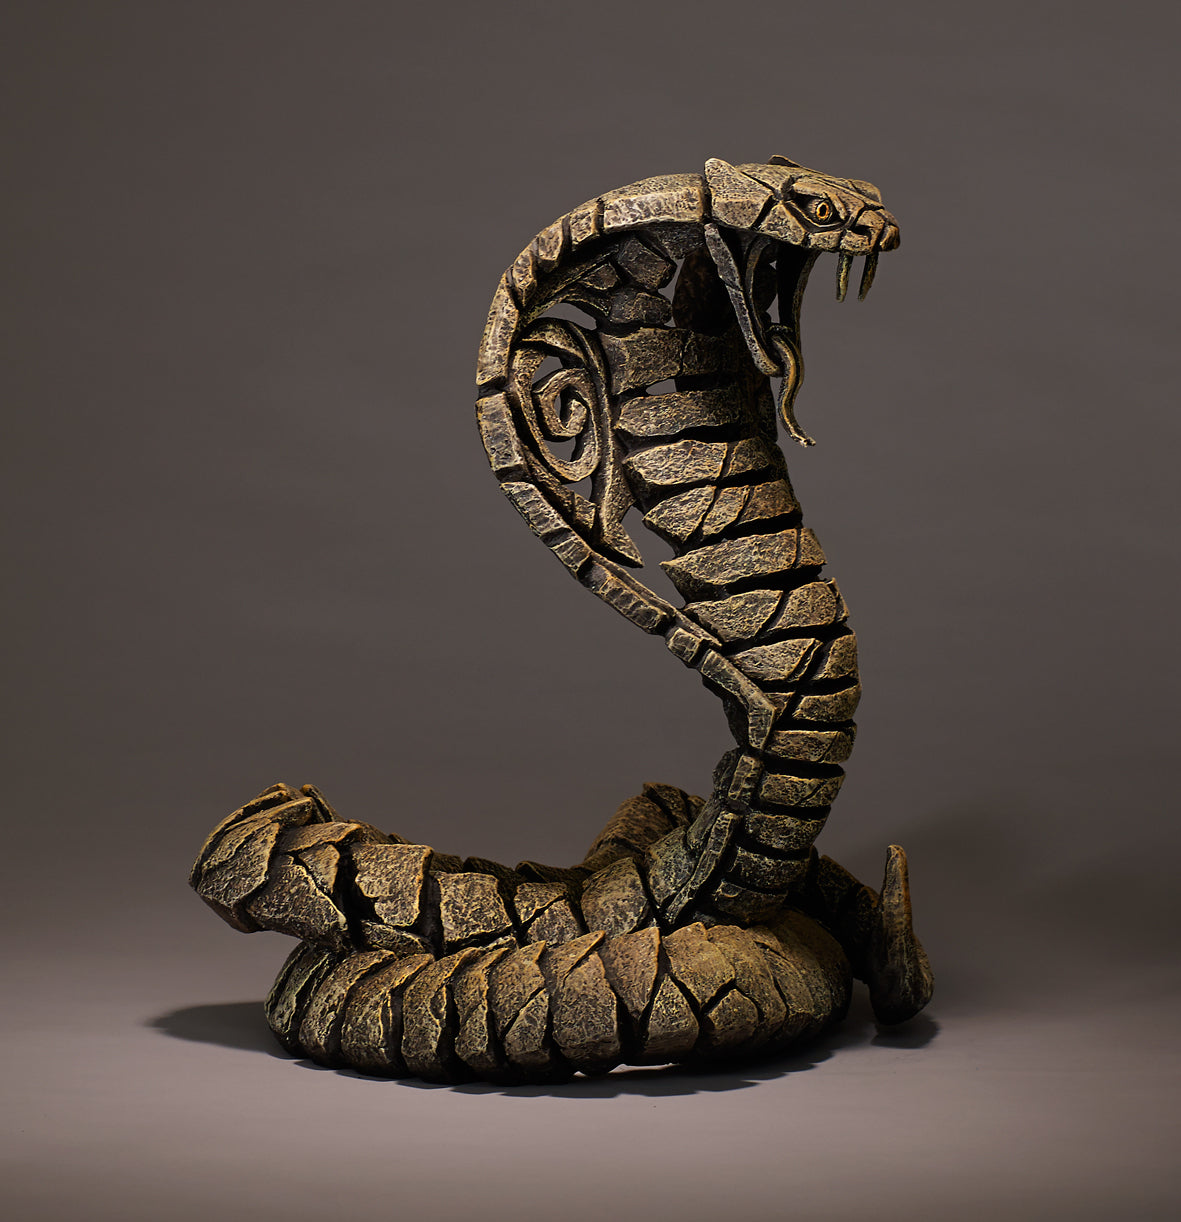 Edge Sculpture Cobra - Desert by Matt Buckley